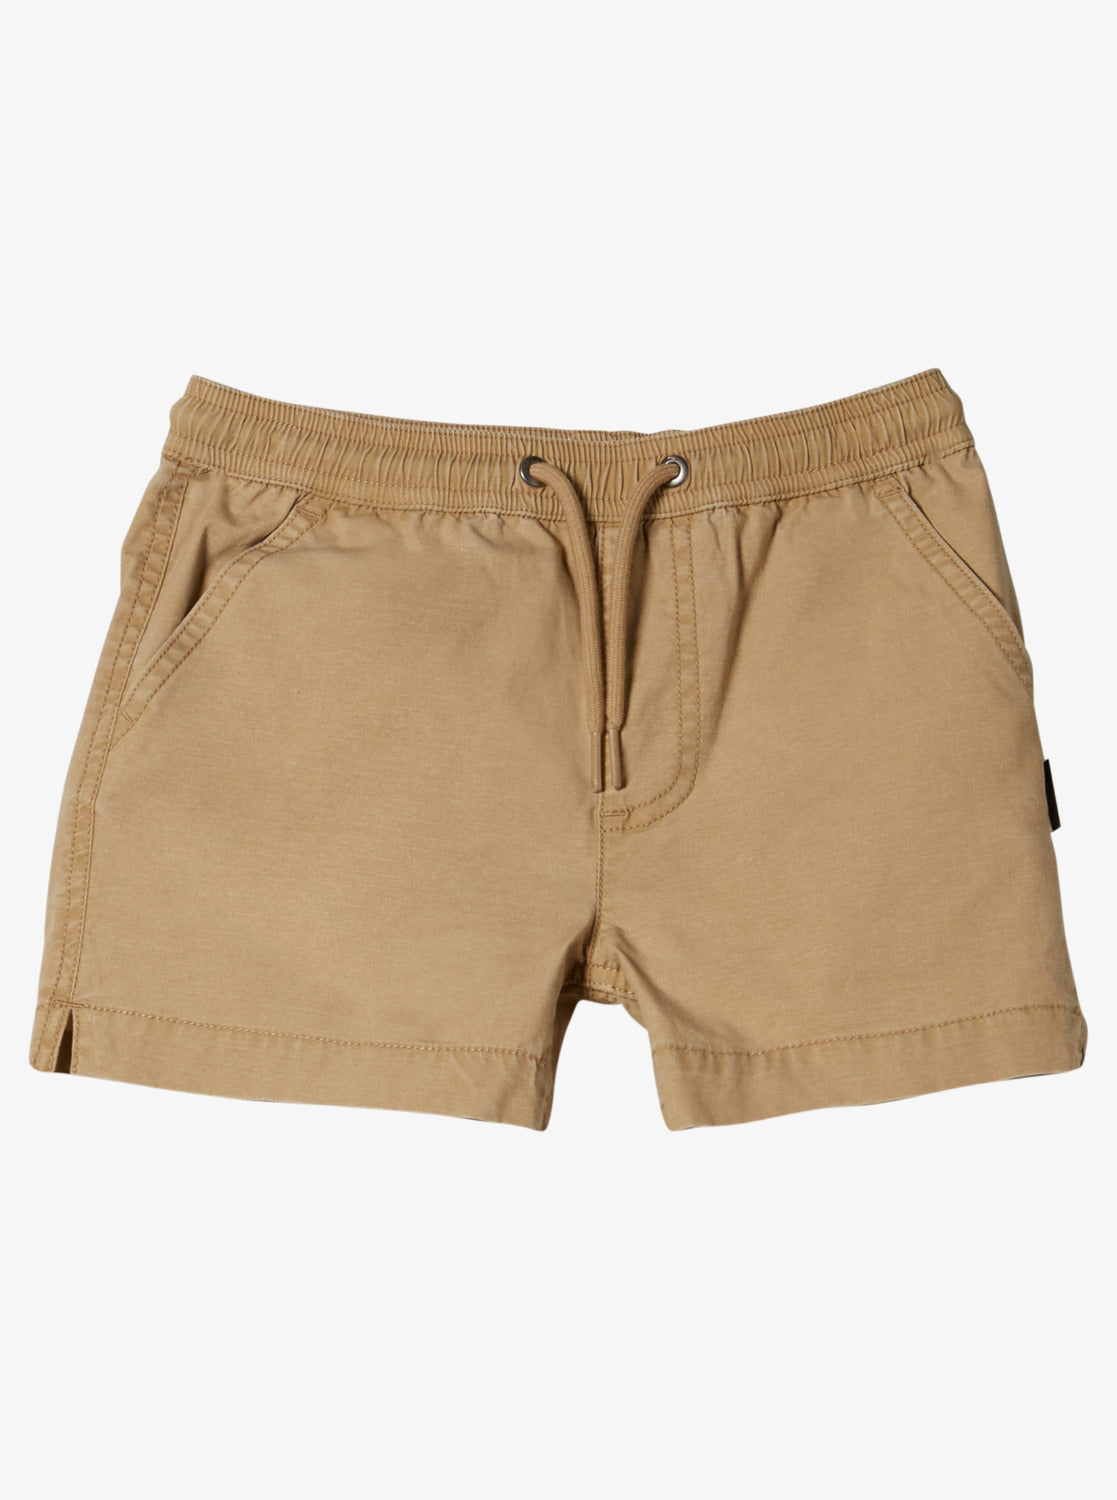 Boys 2-7 Taxer Elastic Waist Shorts - Khaki